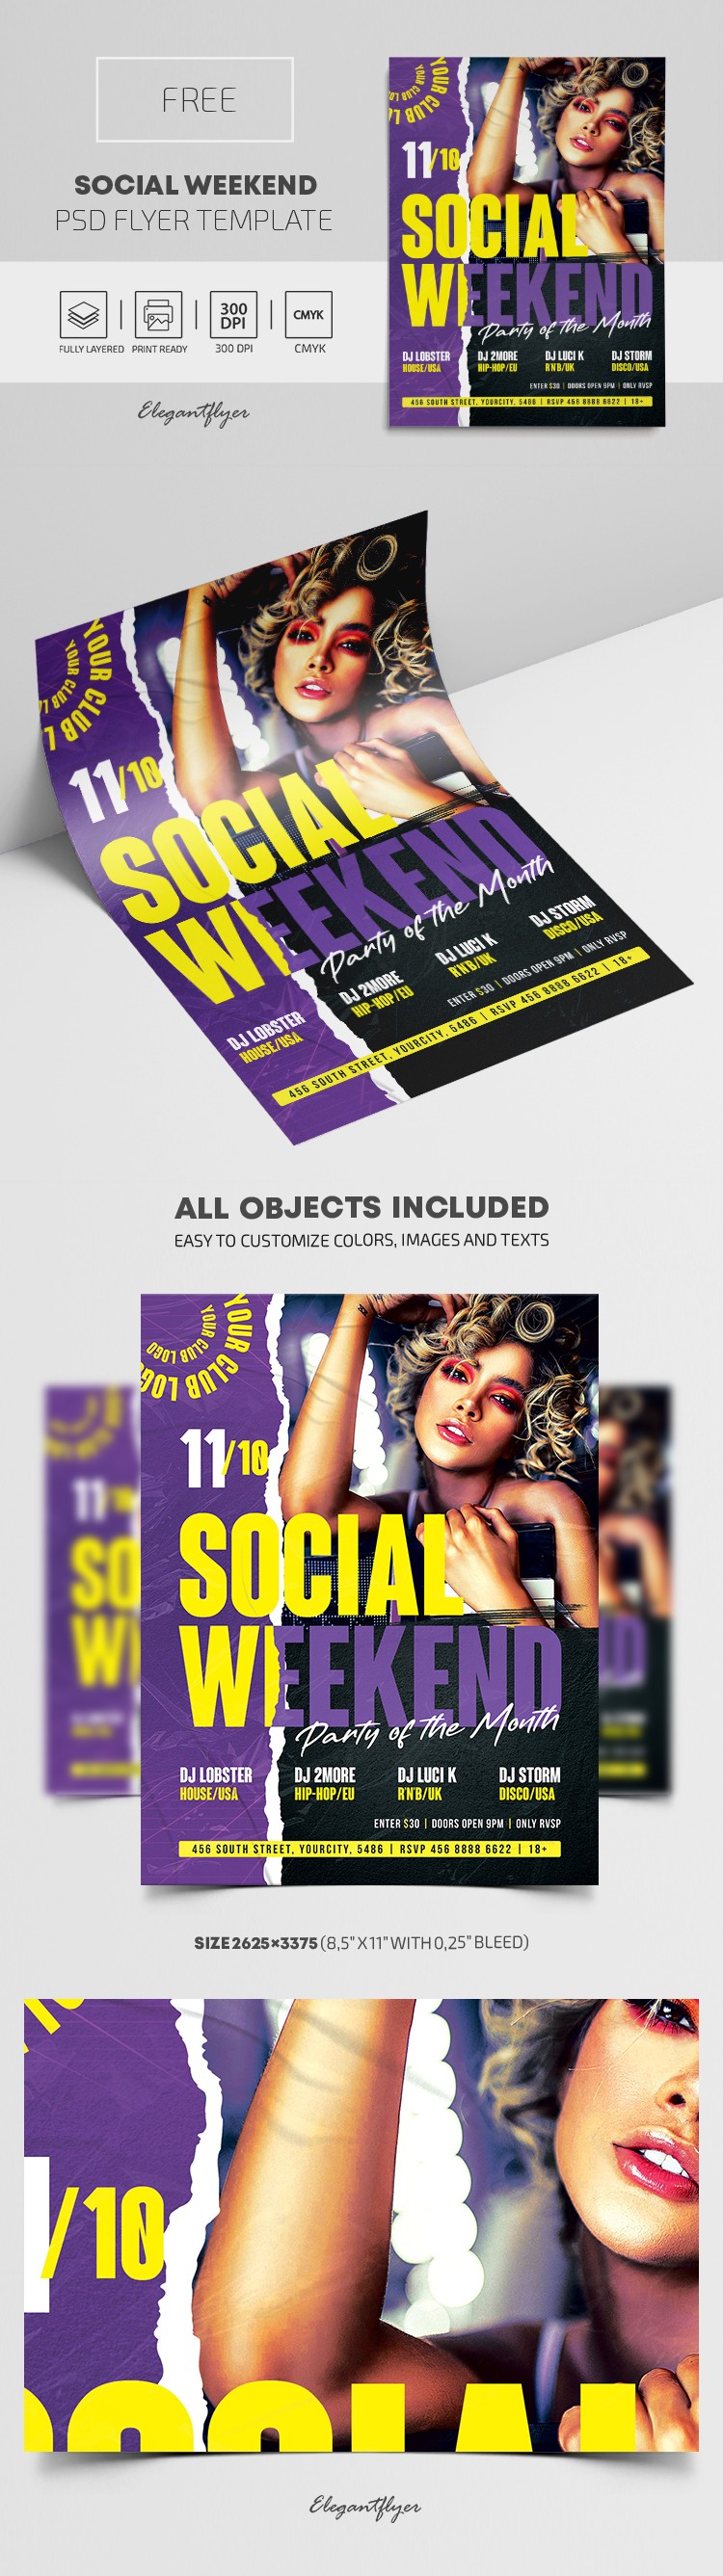 Social Weekend Flyer by ElegantFlyer